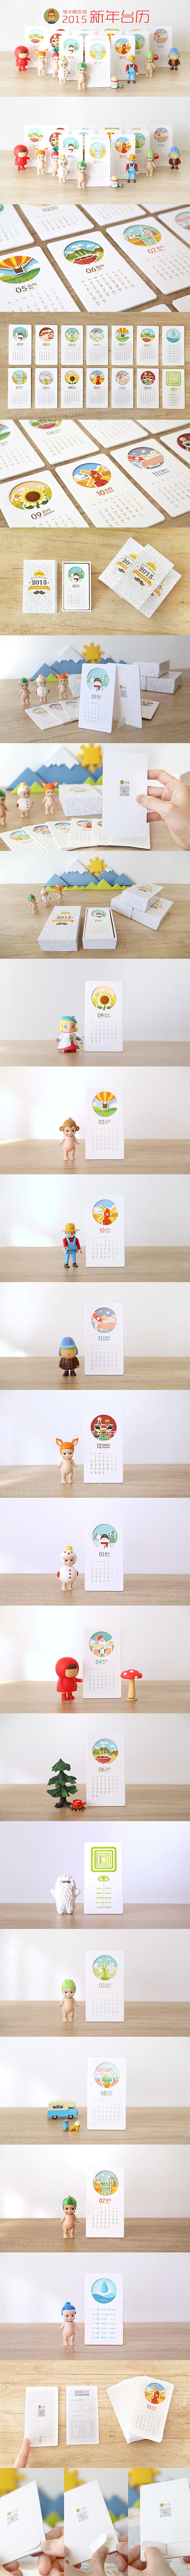 邹大橙原创设计-2015卡片台历